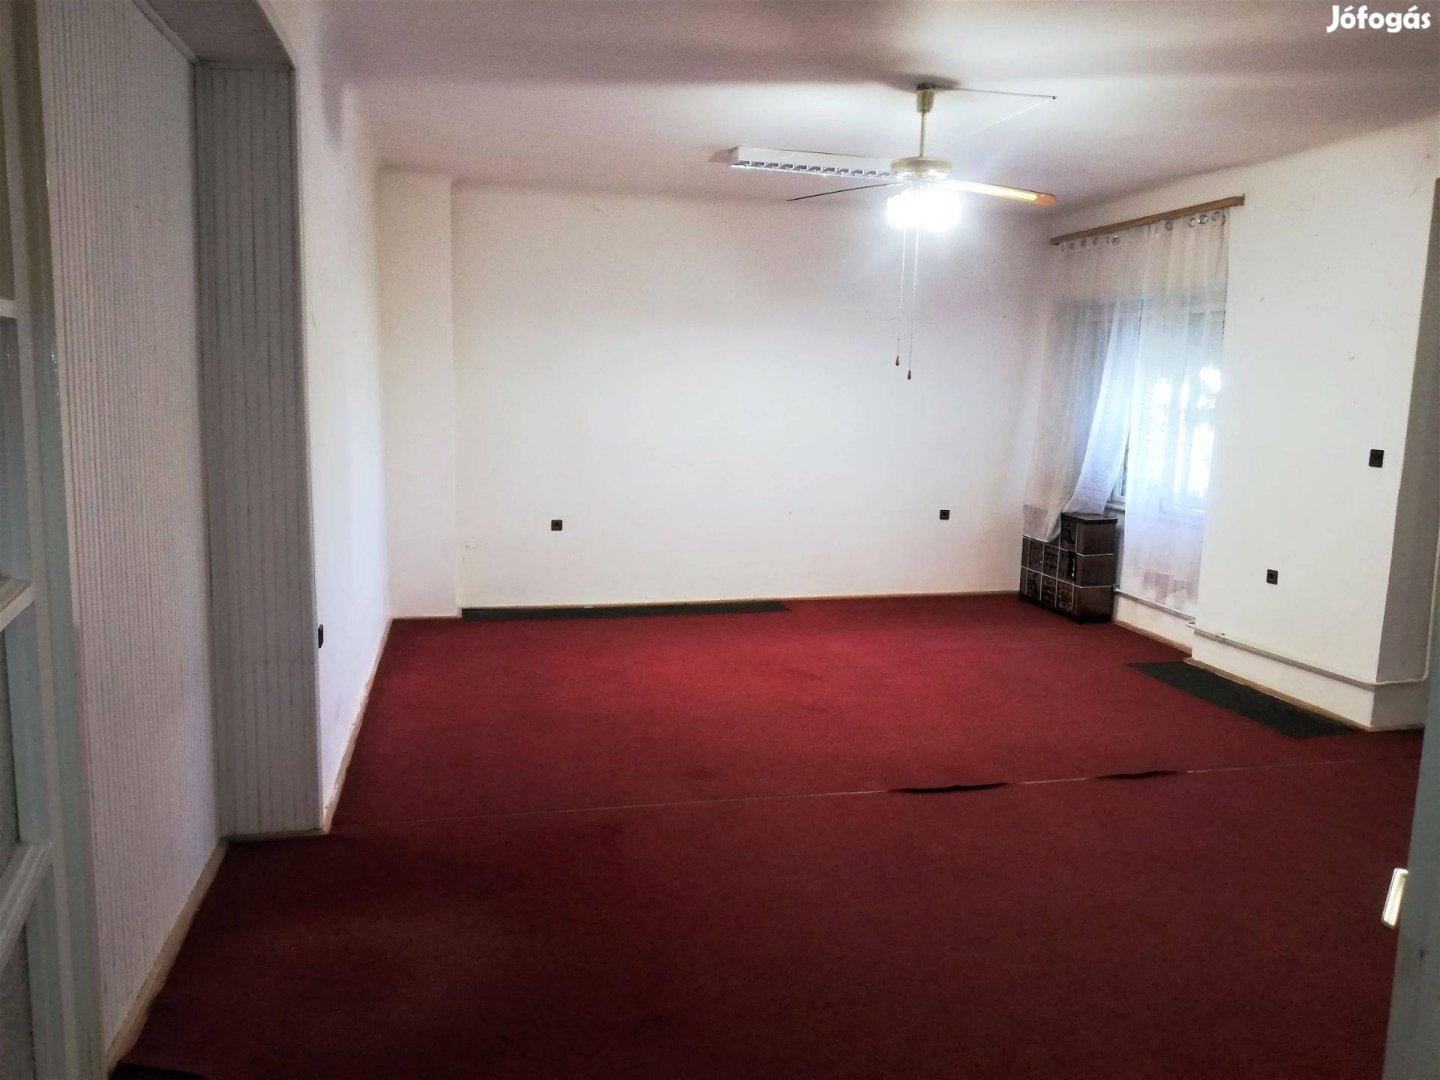 1.emeleti 81 m2-s eladó lakás Nagykanizsán a belváros szívében!